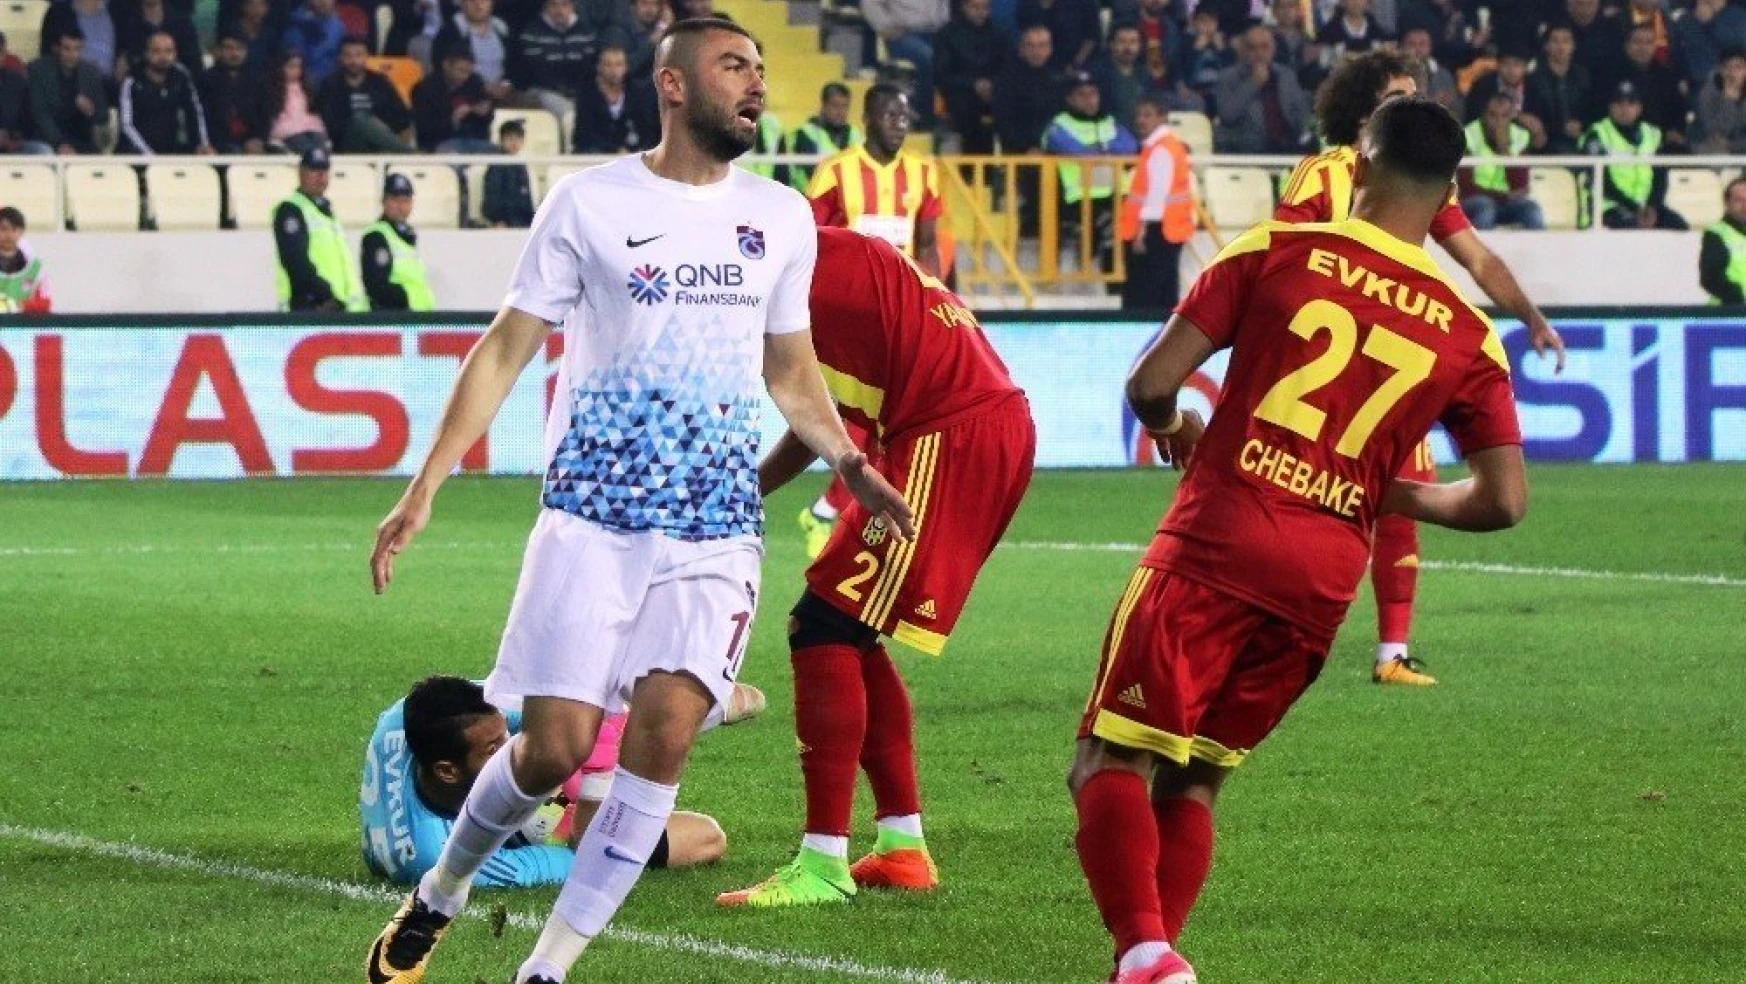 Süper Lig: Evkur Yeni Malatyaspor: 1 - Trabzonspor: 0 (Maç sonucu)
